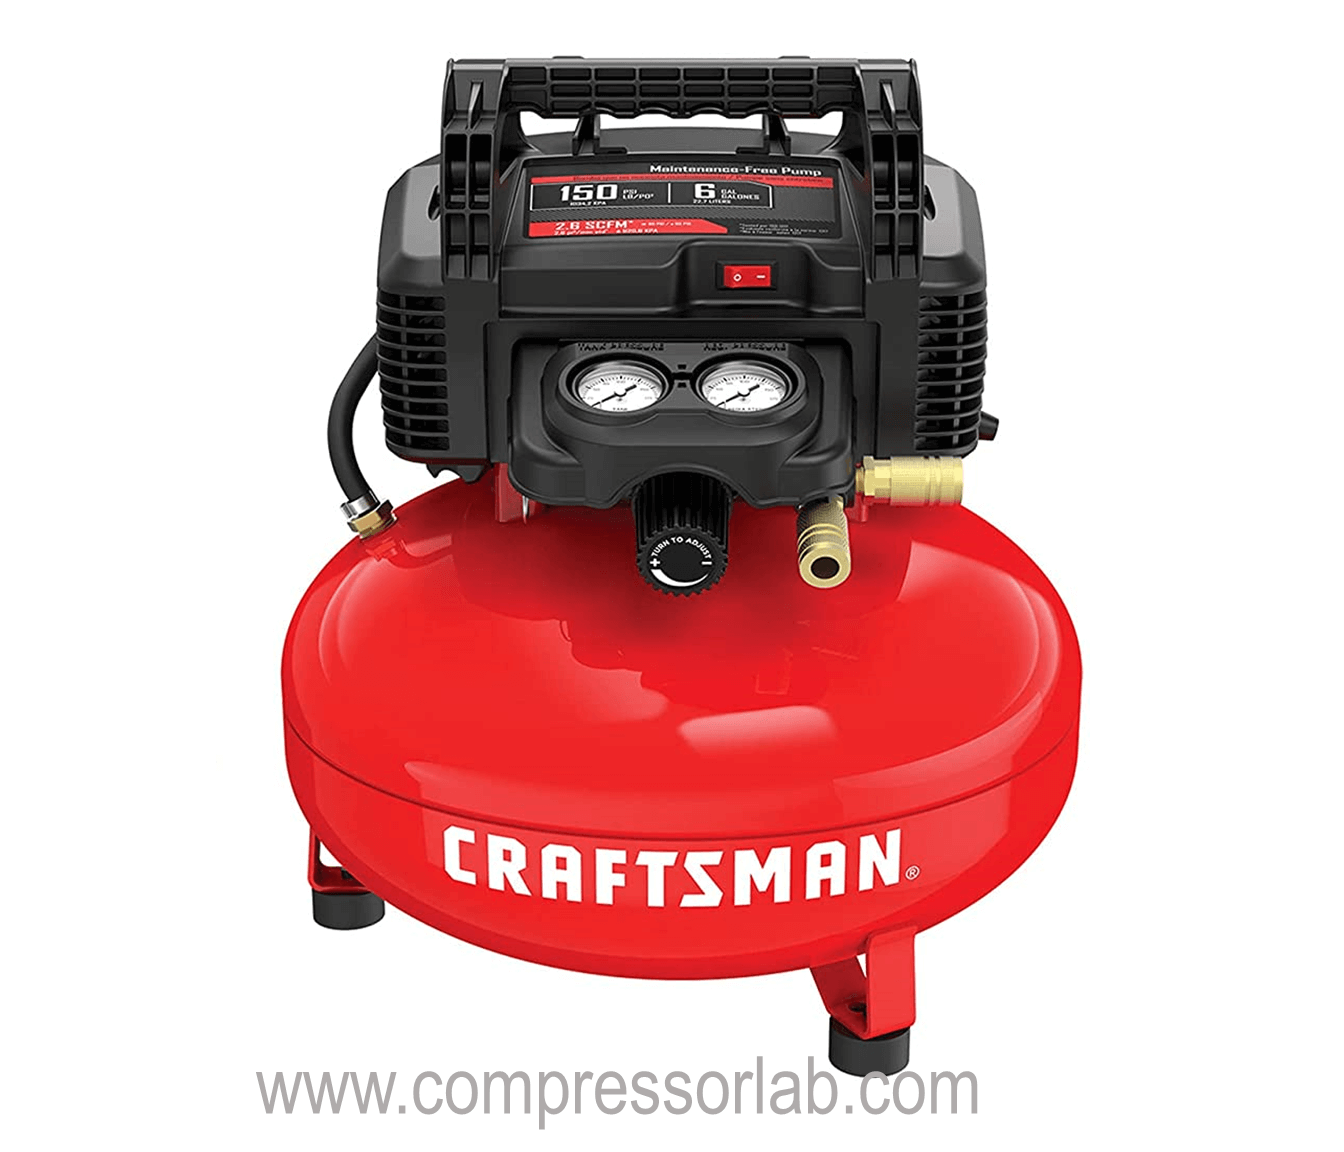 CRAFTSMAN Air Compressor